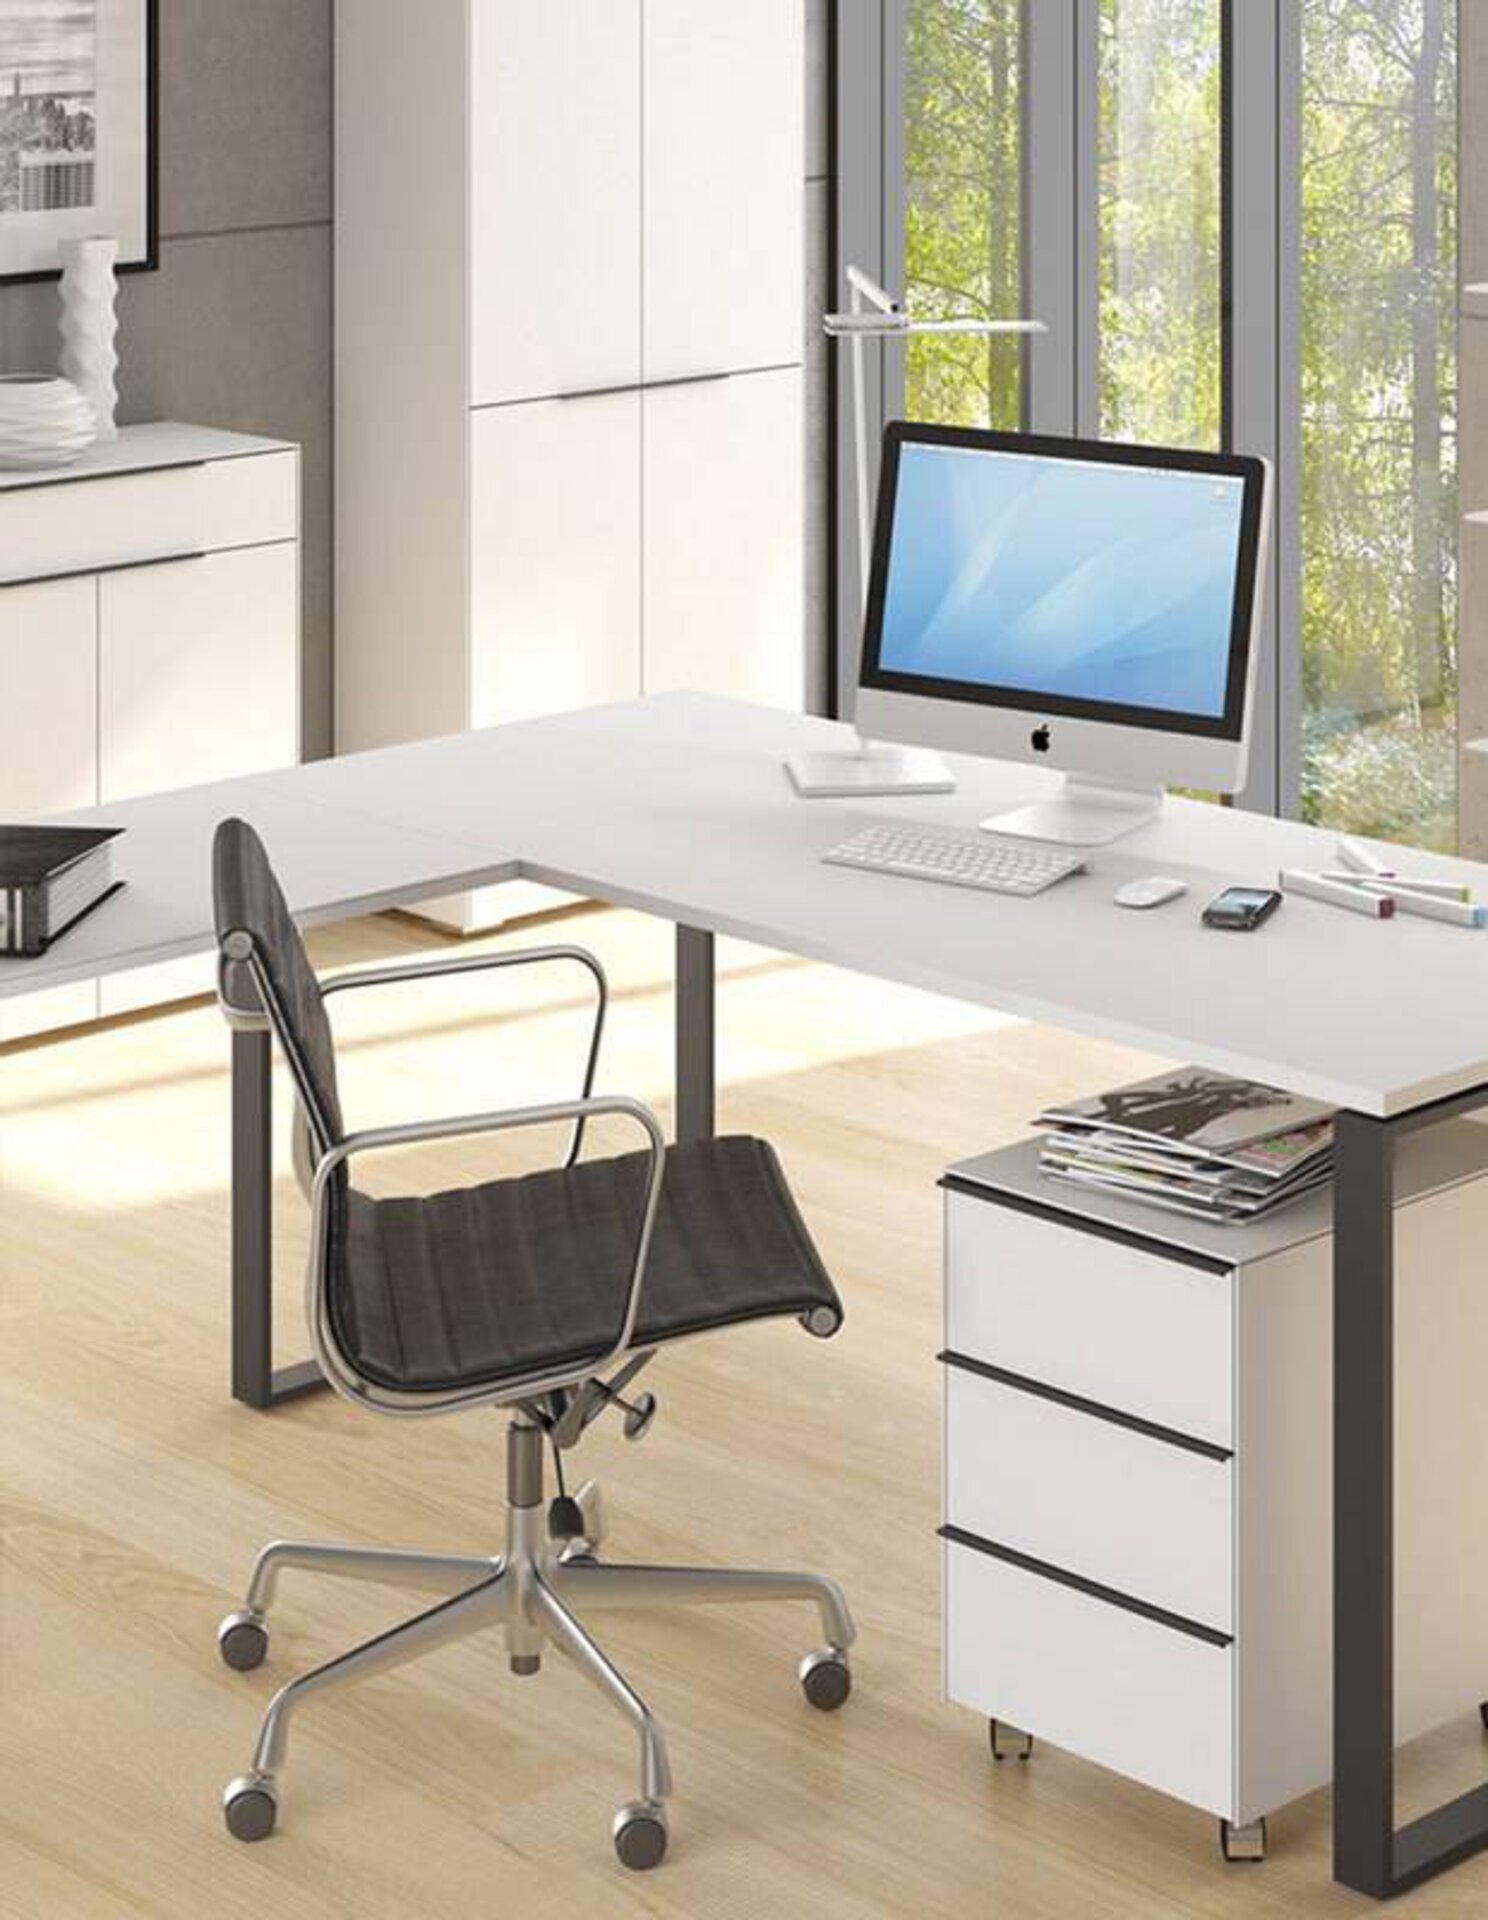 Milieubild zu "ergonomische Büromöbel" auf der Inspirationsseite.